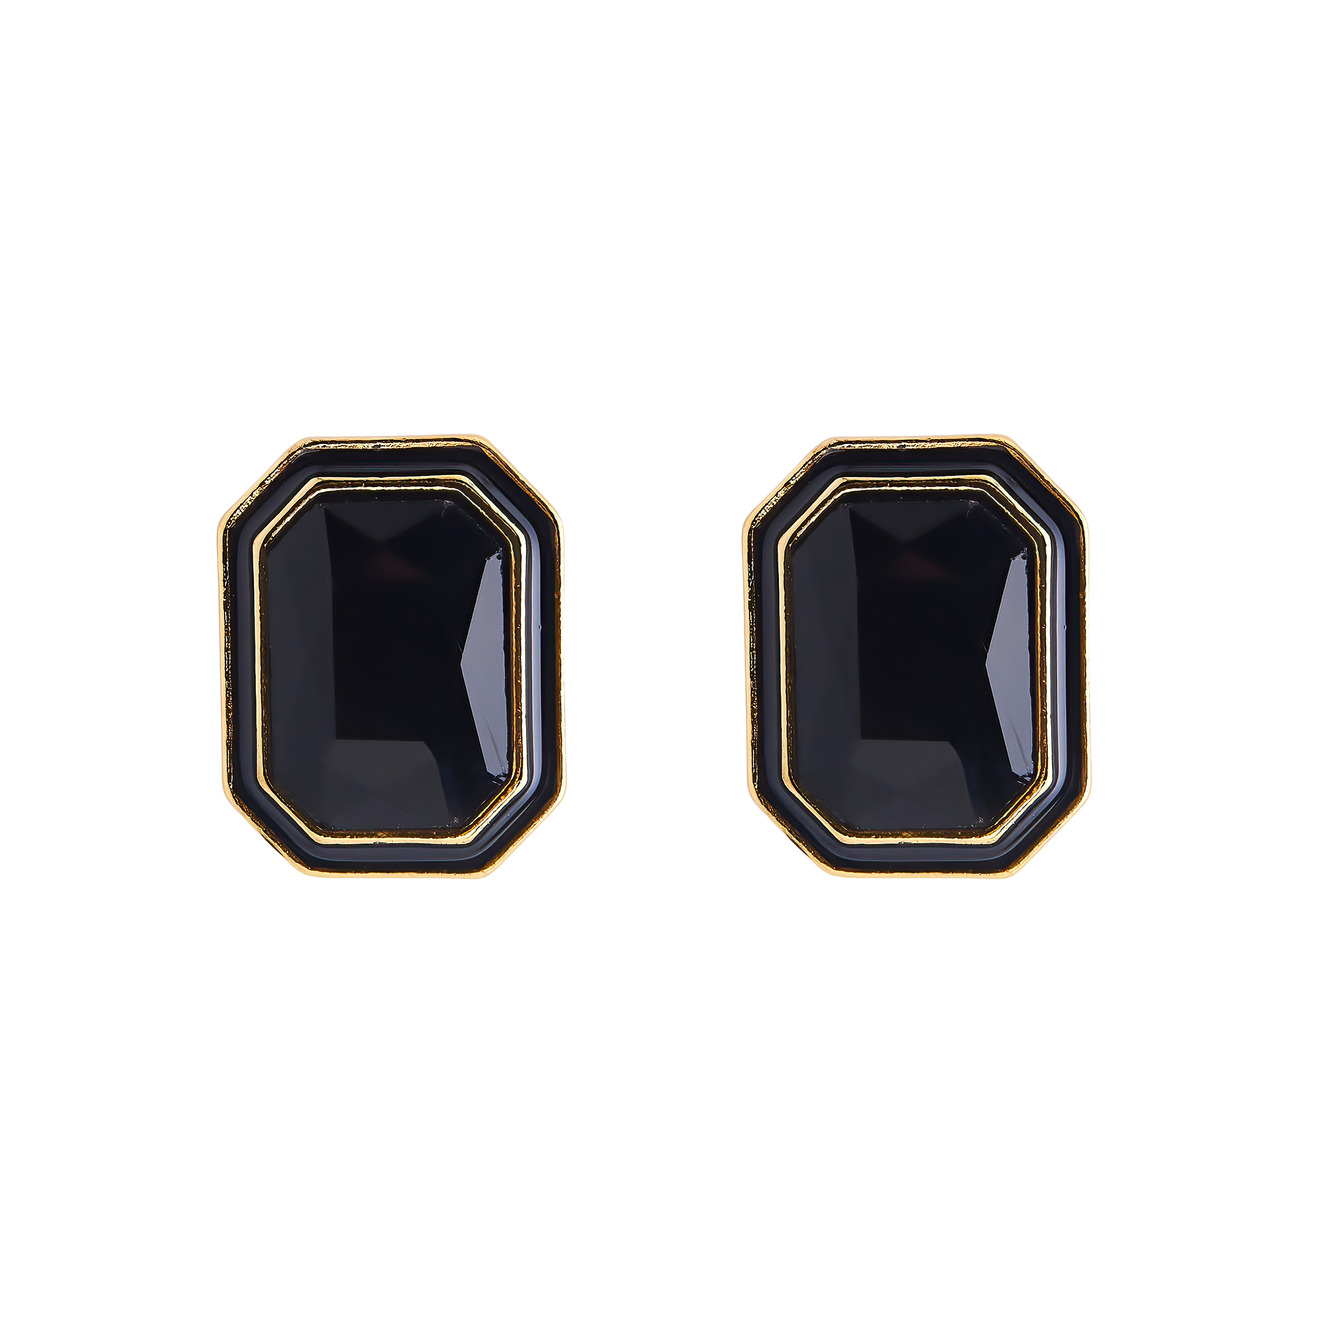 Herald Percy Крупные золотистые серьги с черными кристаллами и черной эмалью vanessa baroni золотистые крупные серьги со звеньями